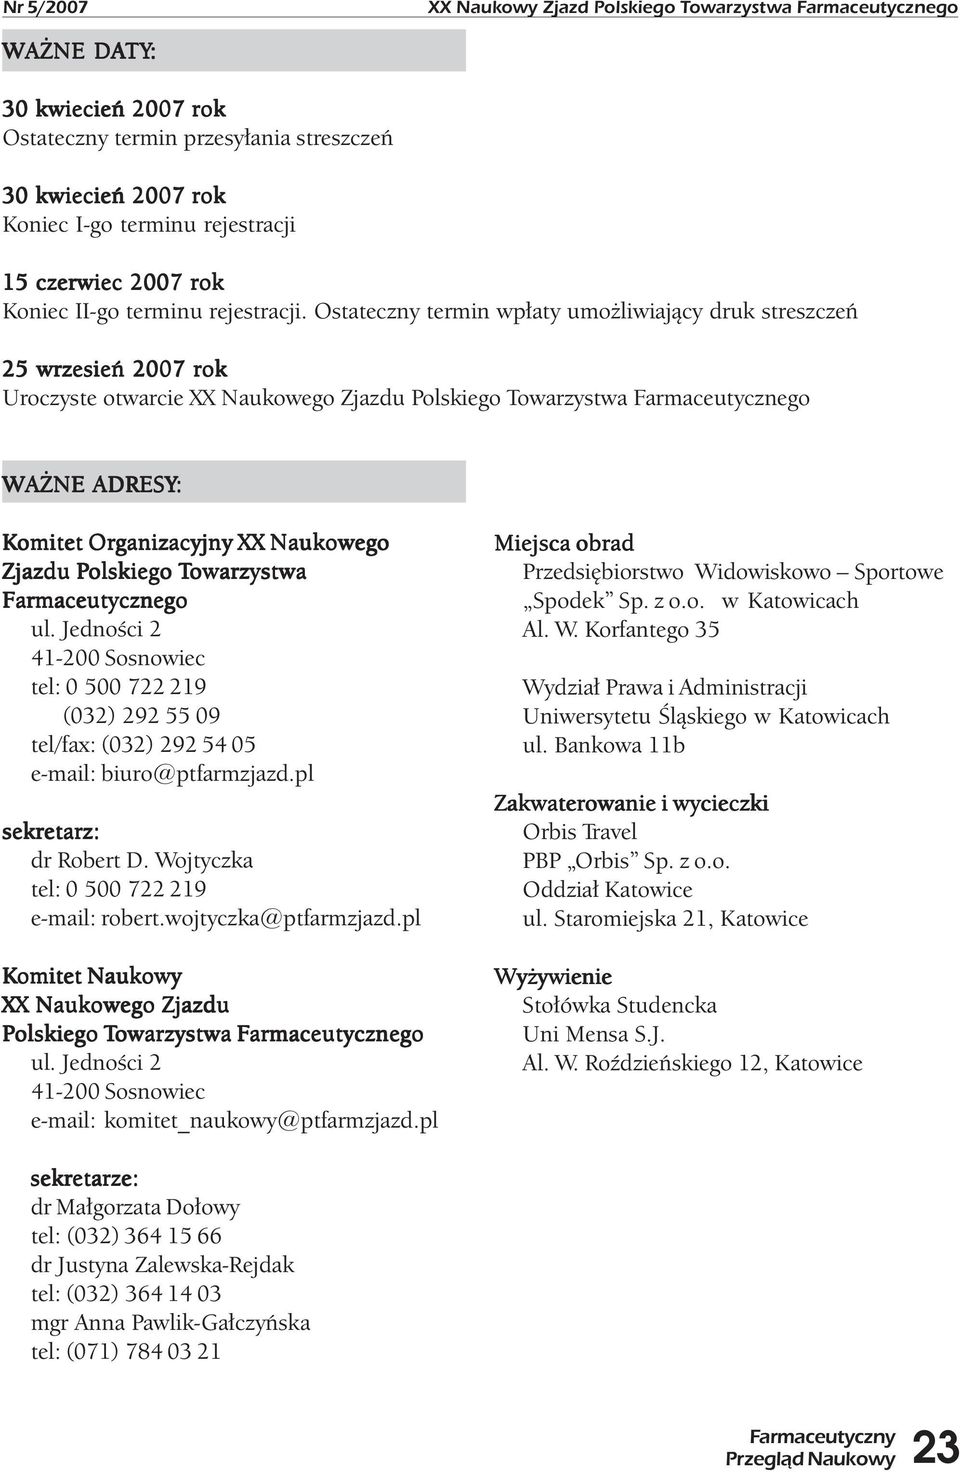 Ostateczny termin wpłaty umożliwiający druk streszczeń 25 wrzesień 2007 rok Uroczyste otwarcie XX Naukowego Zjazdu Polskiego Towarzystwa Farmaceutycznego WAŻNE ADRESY: Komitet Organizacyjny XX